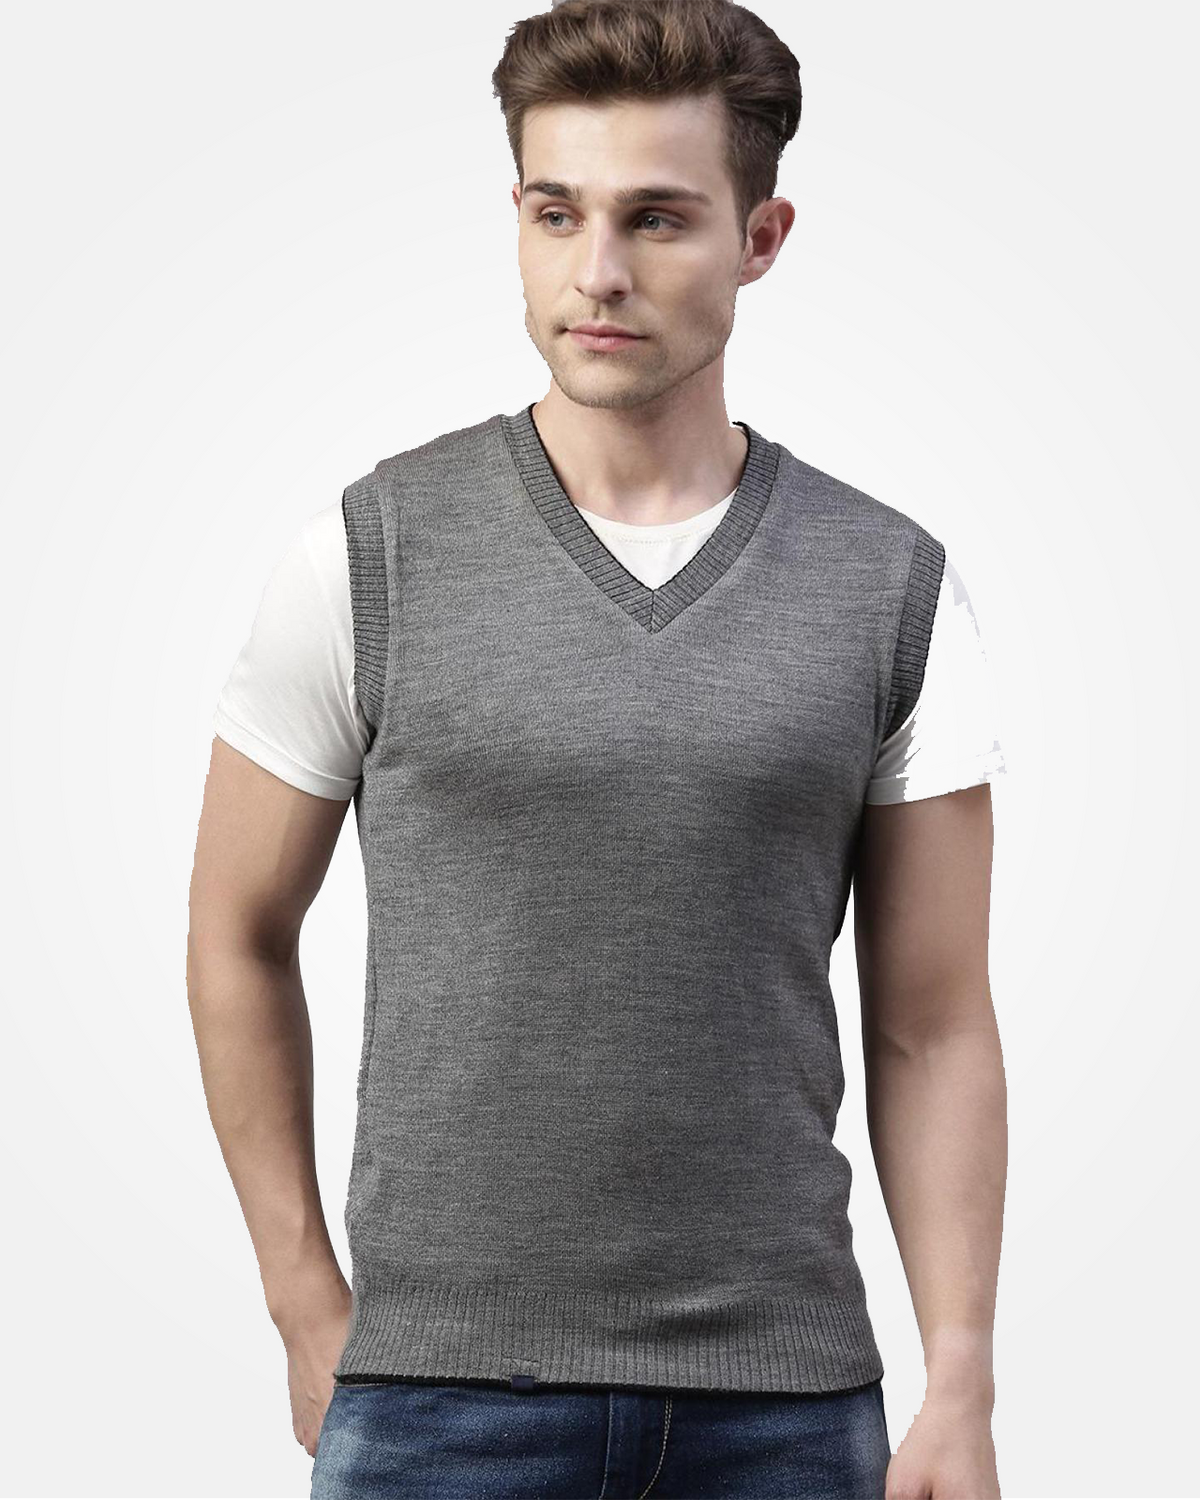 Merino Blend Reversible Sleeveless Sweater For Men